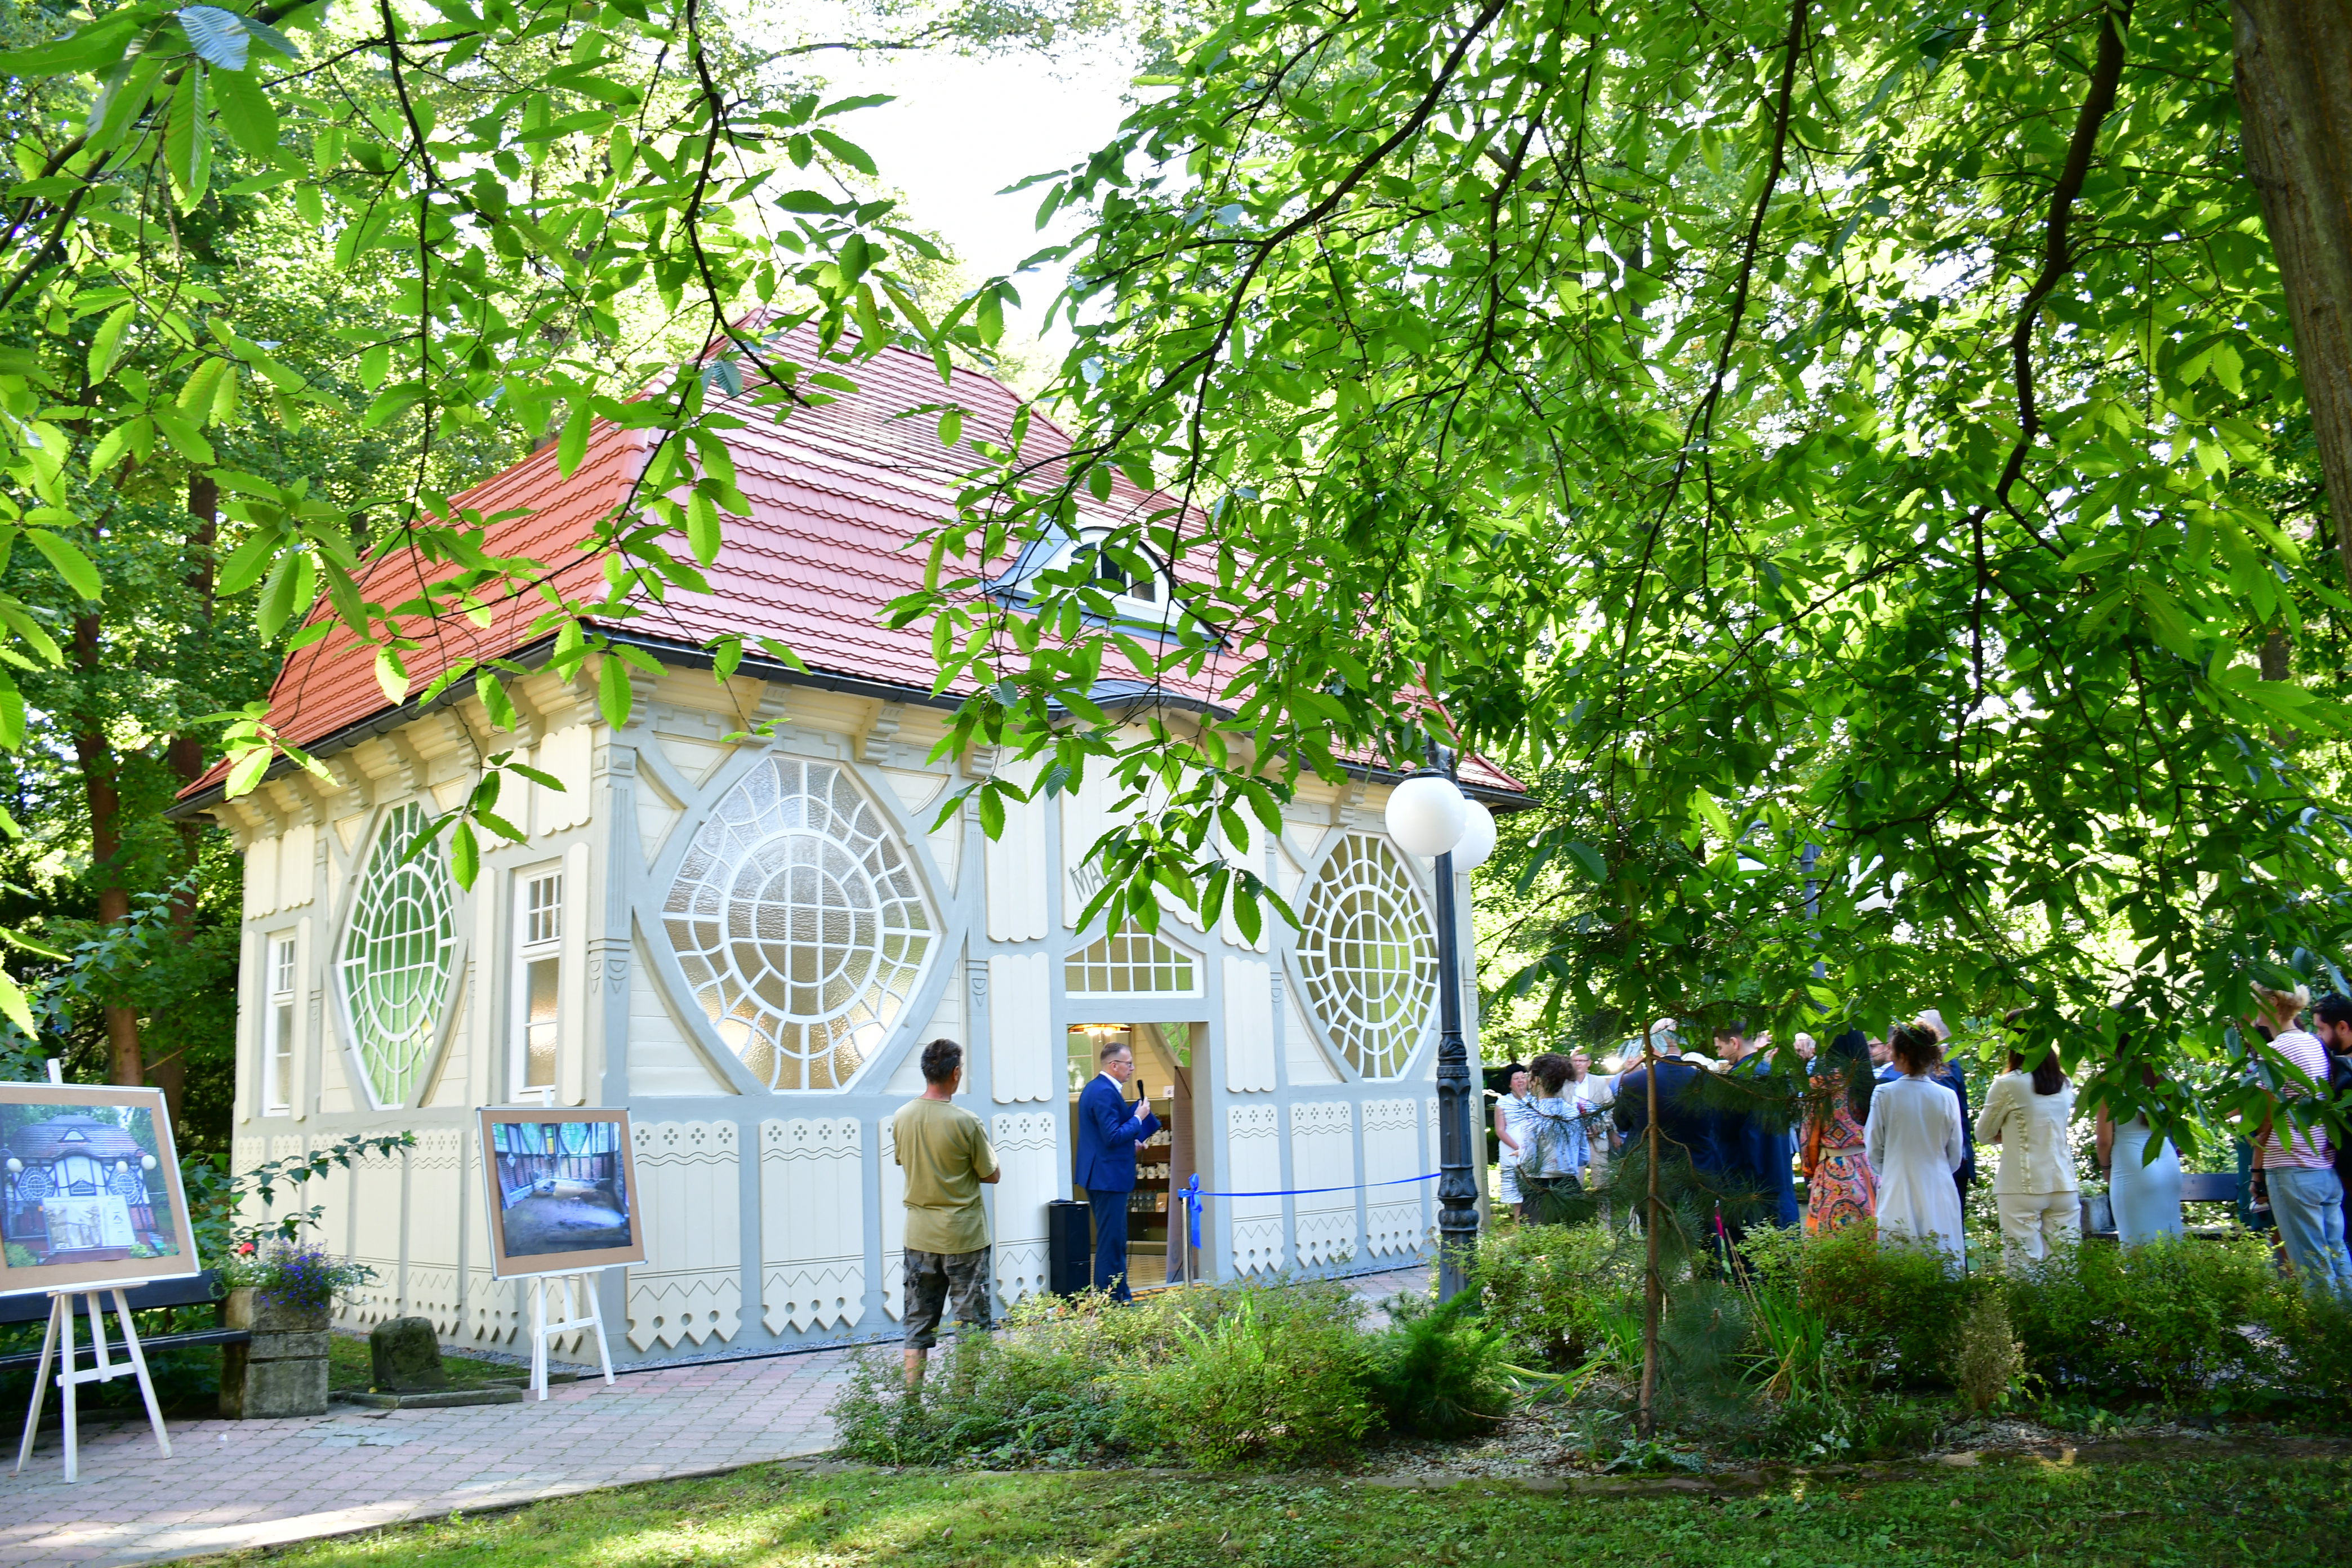 Budynek Starej Pijalni w Zdroju, pośród drzew